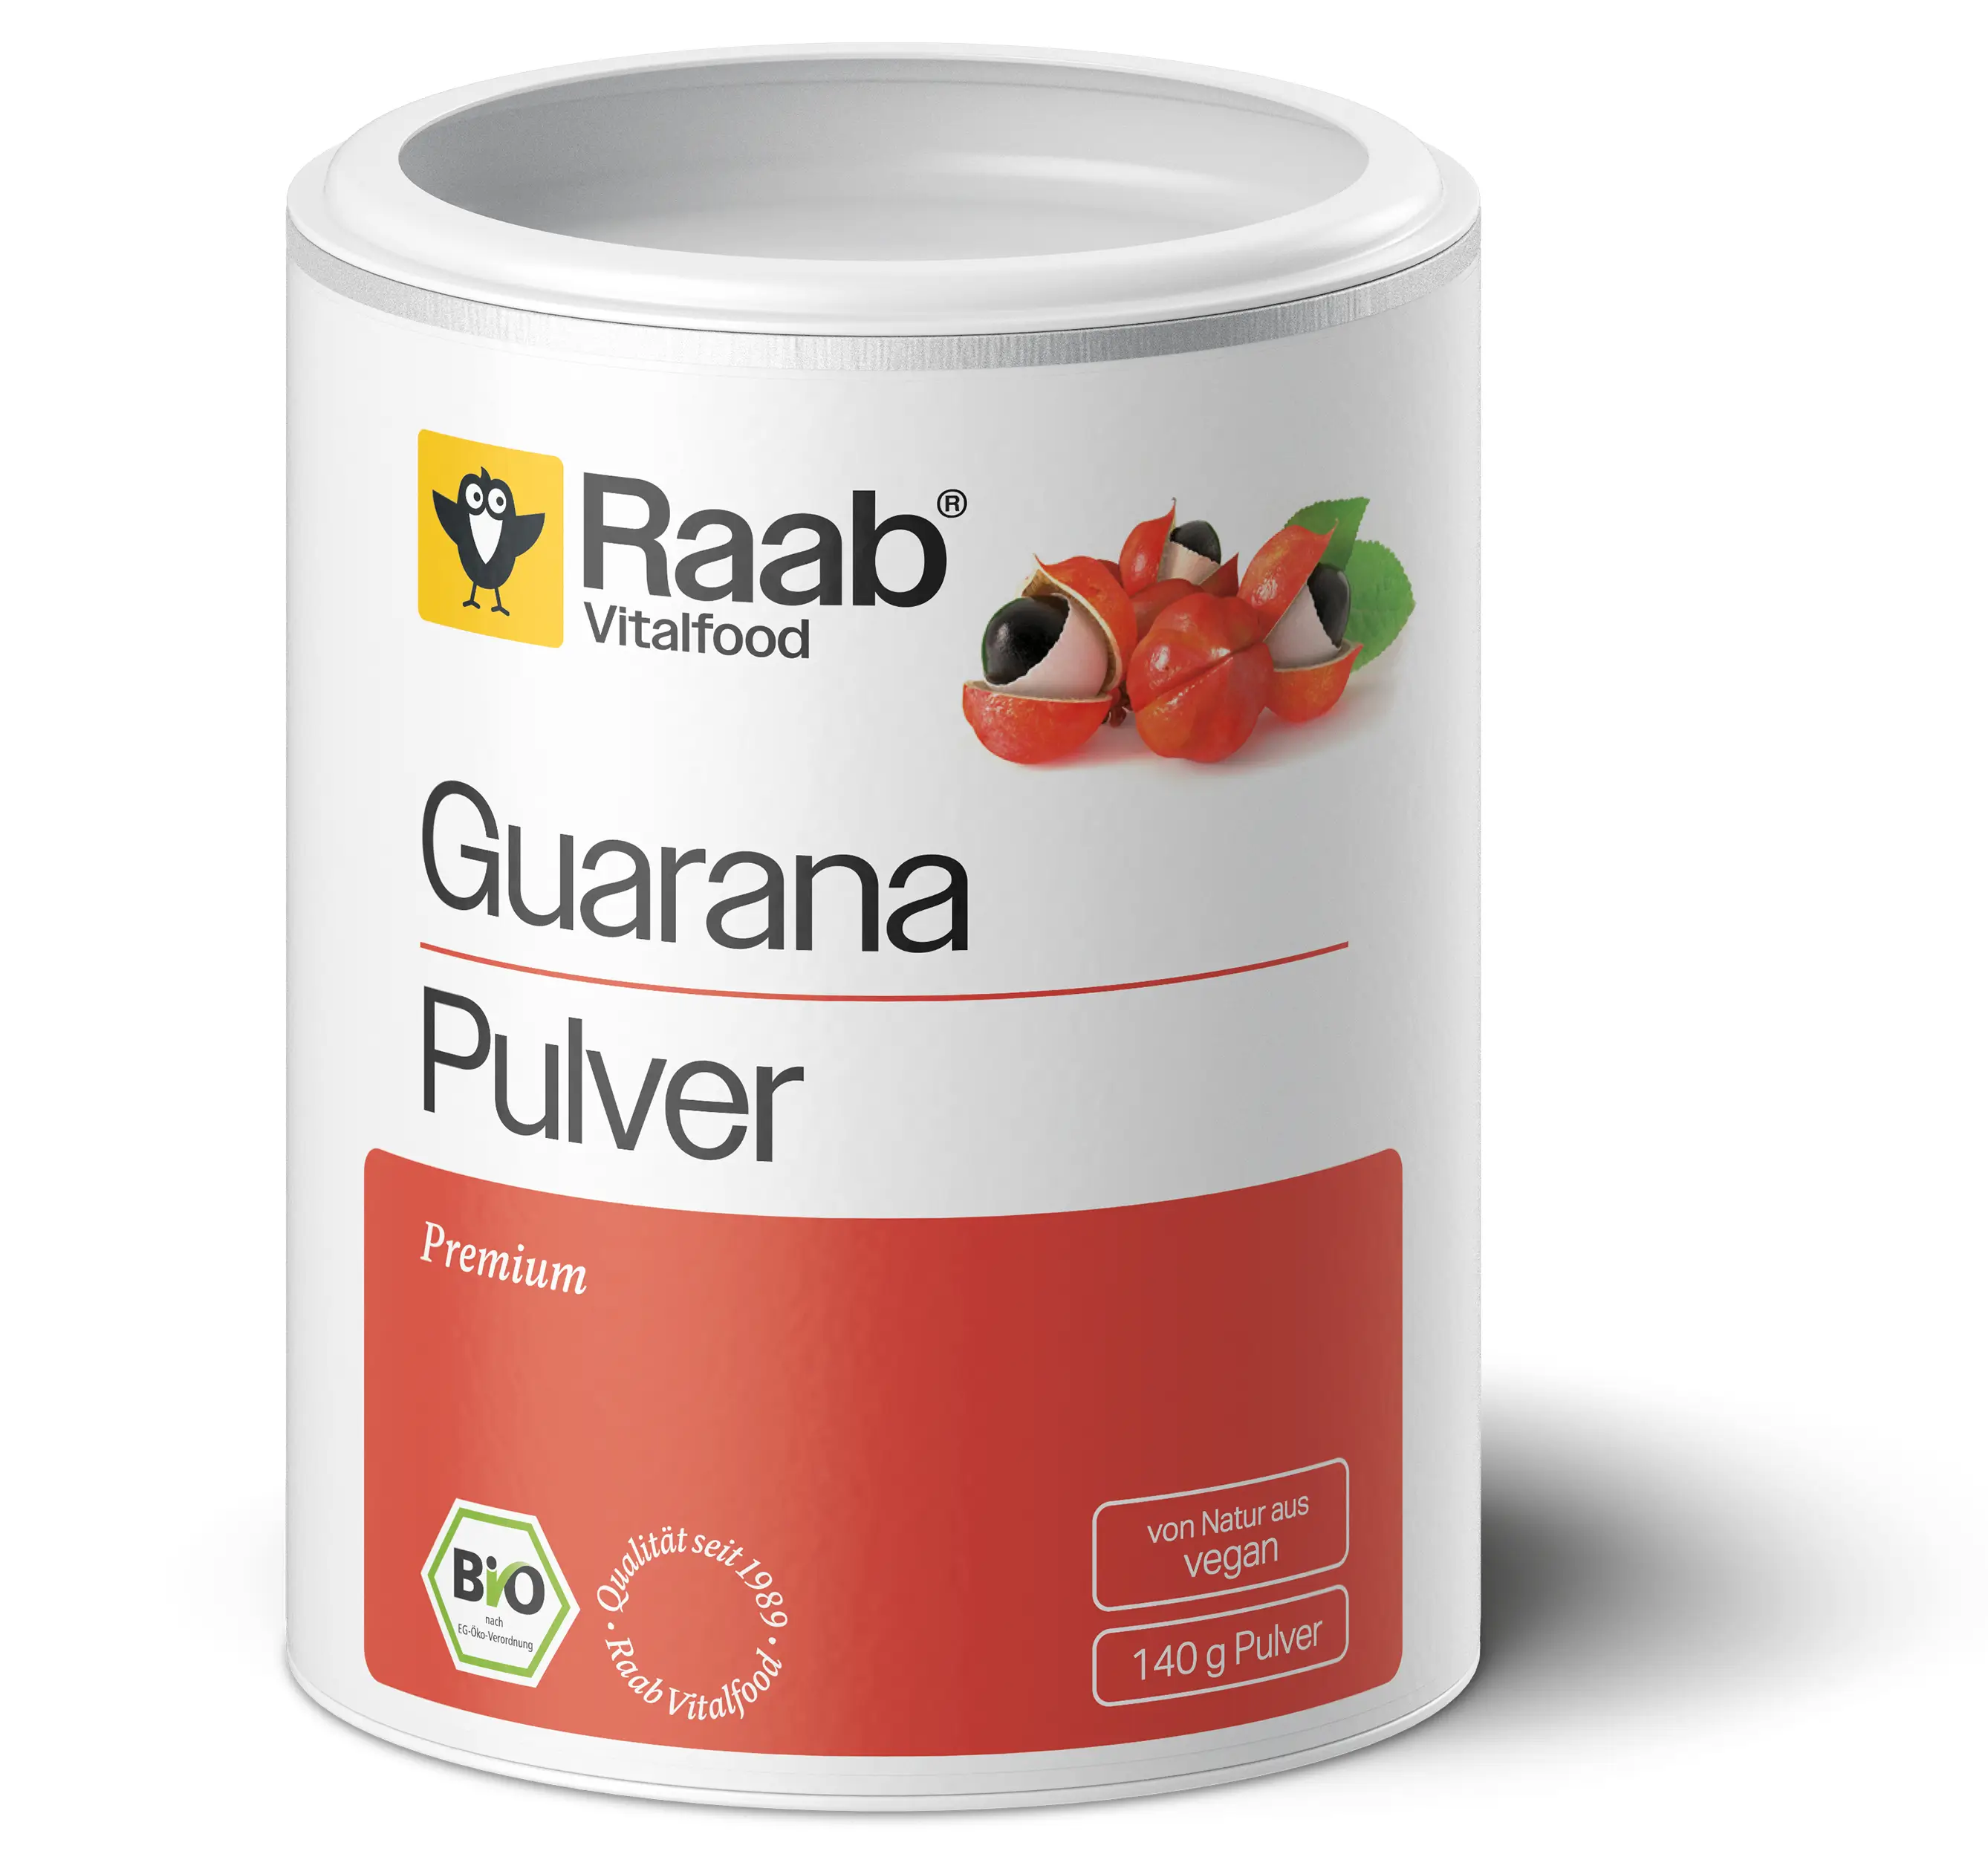 Bio Guarana Pulver